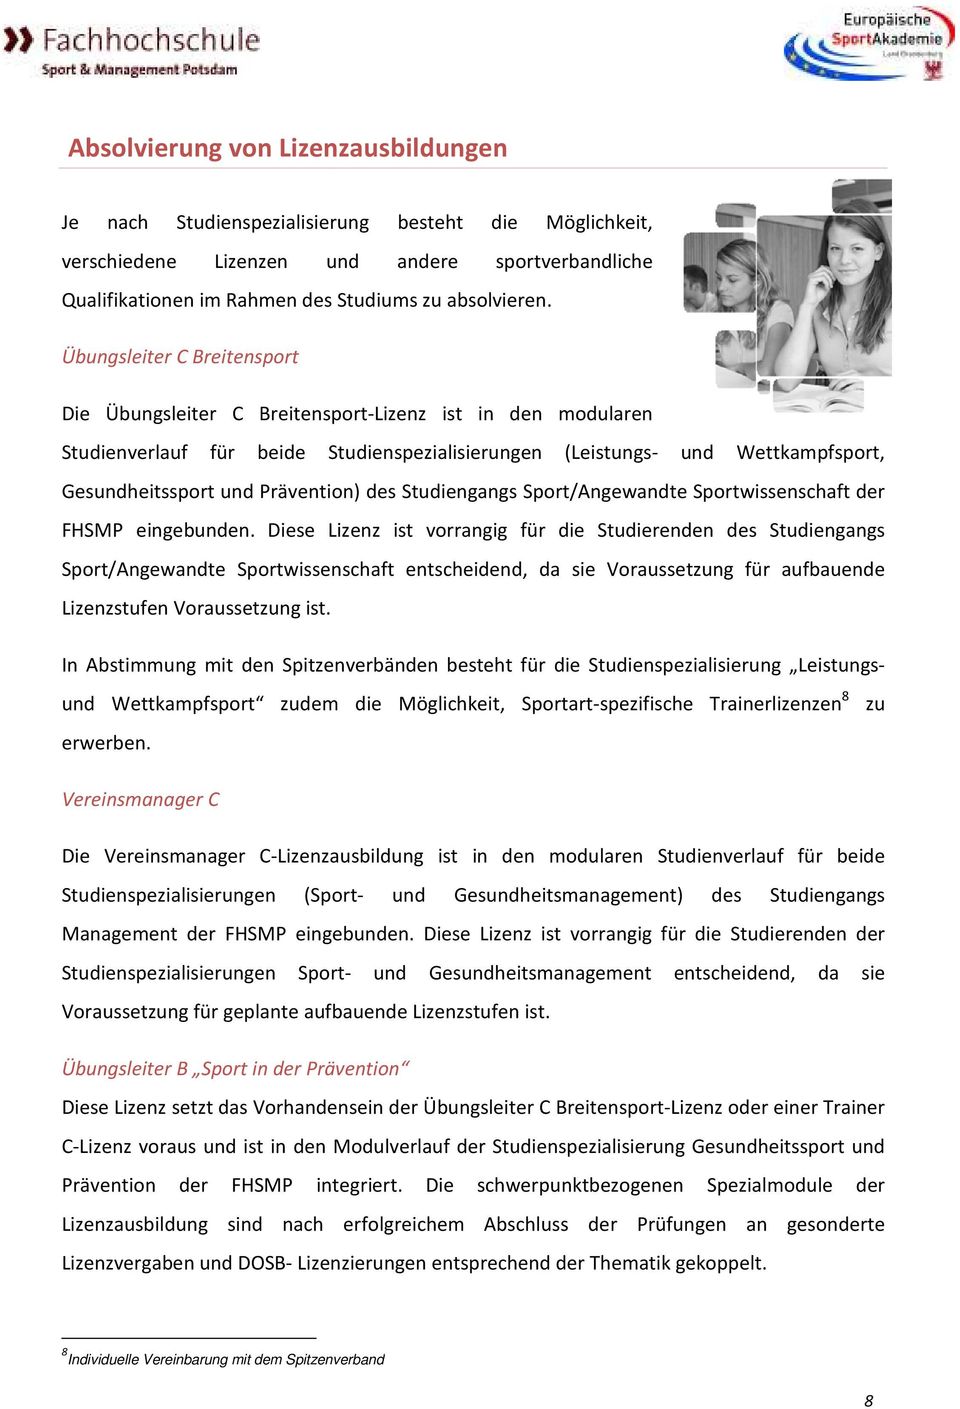 Die Fachhochschule Fur Sport Und Management Potsdam Pdf Kostenfreier Download